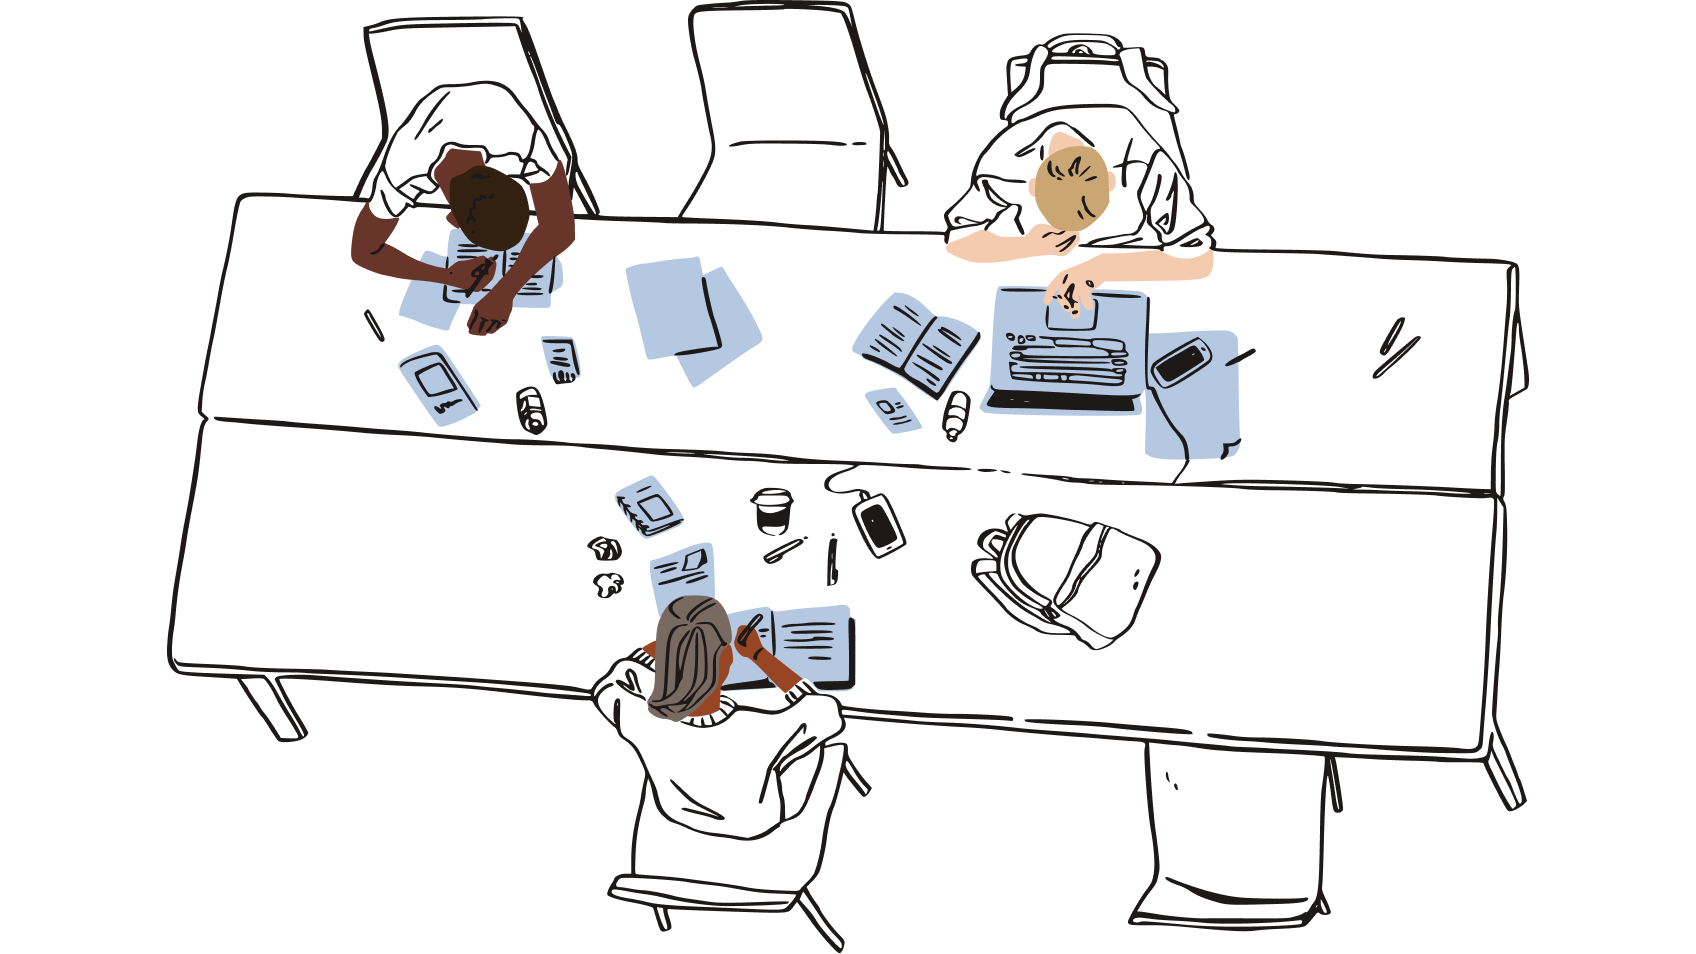 종잇조각으로 둘러싸인 공유 작업 공간에 앉아 있는 한 무리의 사람들 일러스트레이션, 비밀번호를 실물 종이에 적어 책상 근처에 보관할 때의 위험을 의미